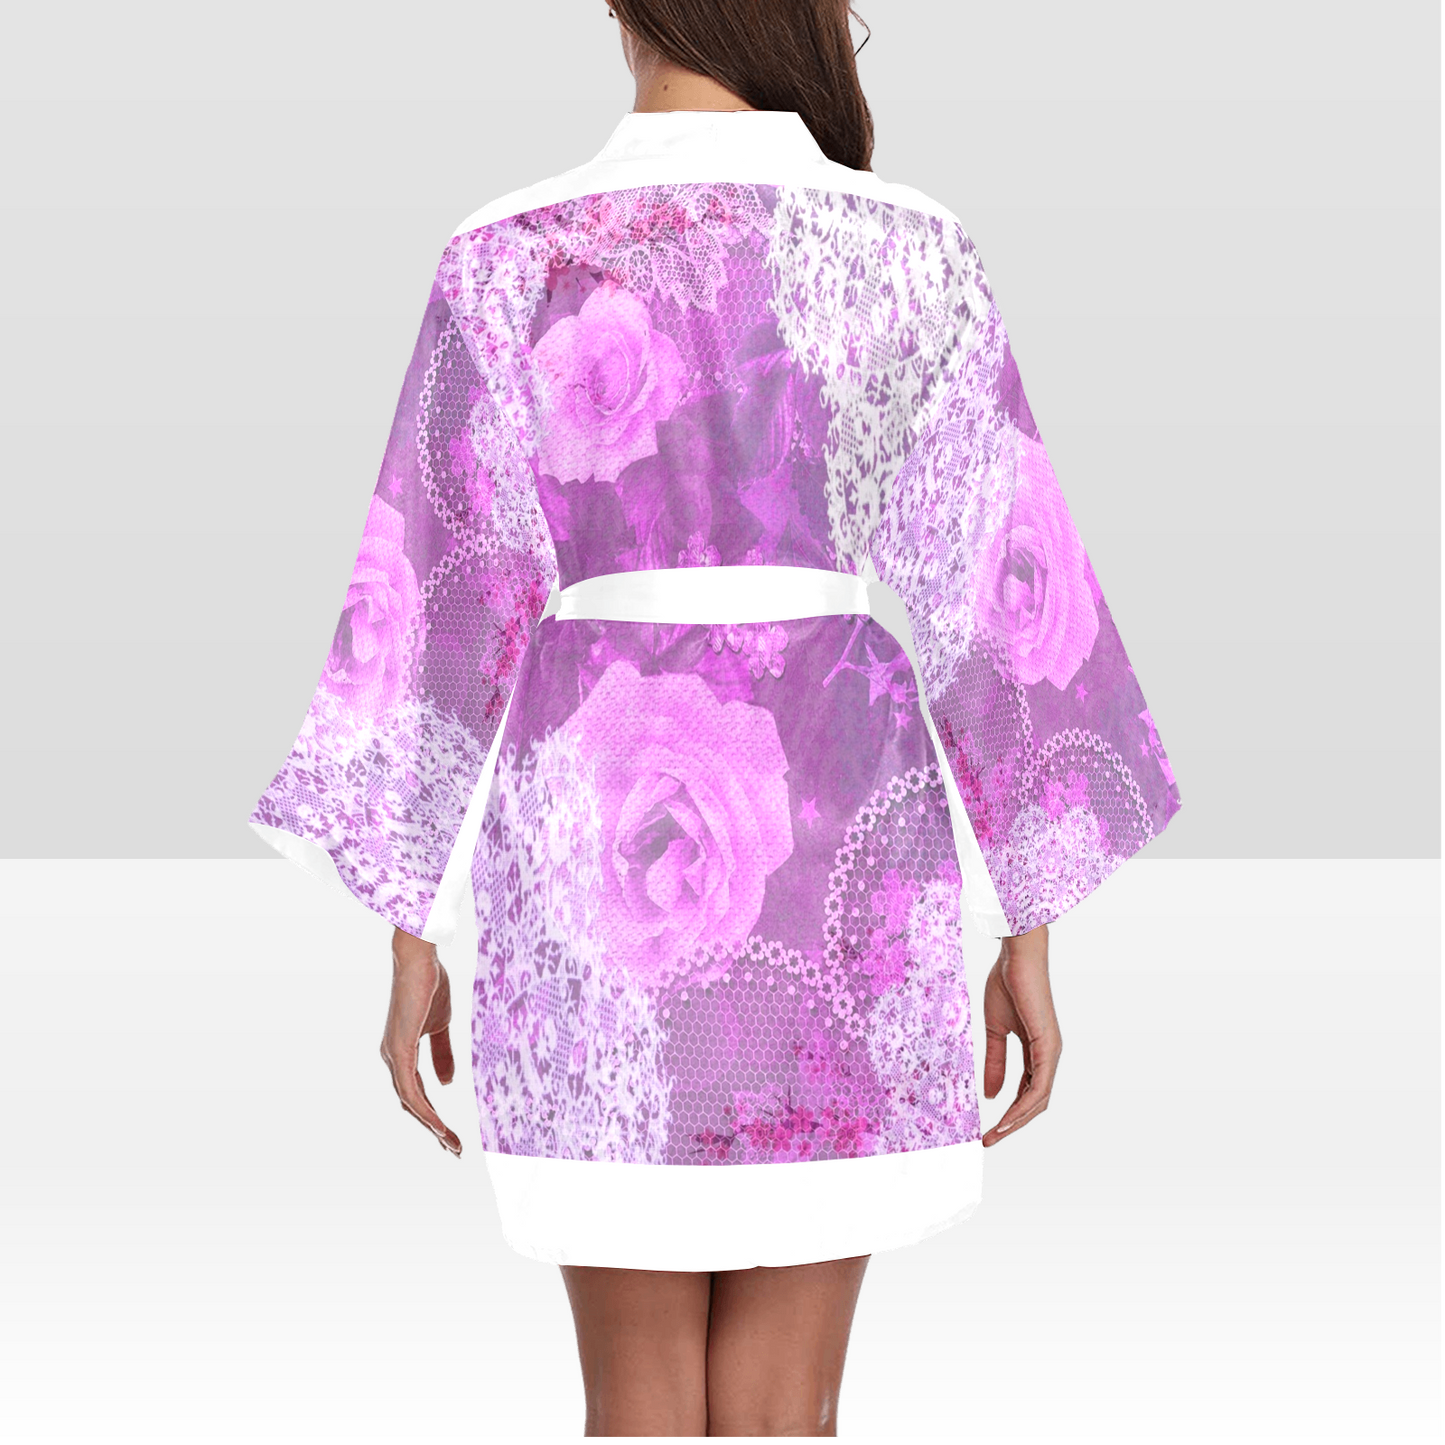 Victorian Lace Kimono Robe, Black or White Trim, Sizes XS to 2XL, Design 03